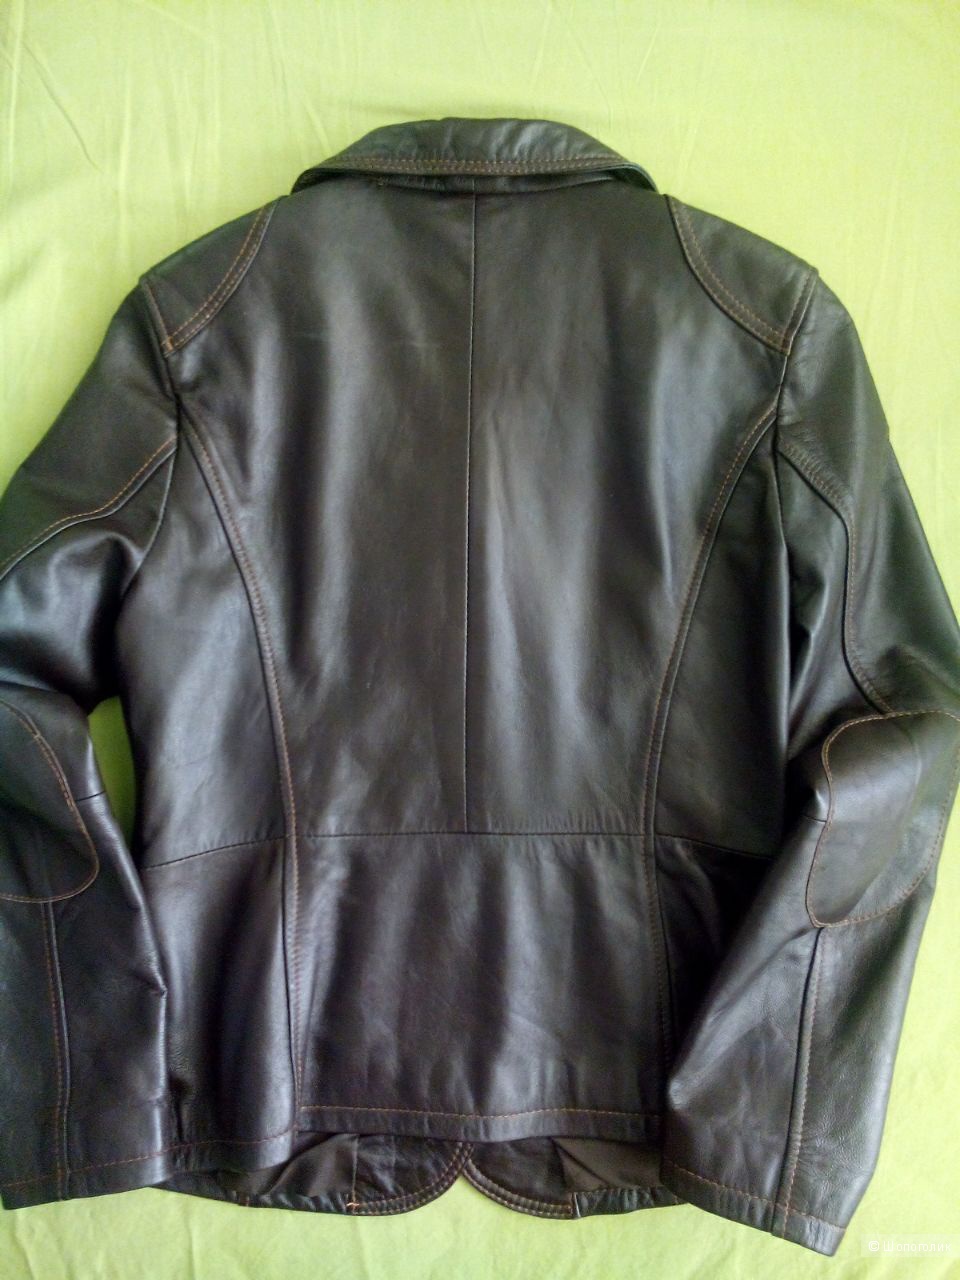 Пиджак кожаный женский, шоколадного цвета, lambnappa(кожа ягненка) 46 размер российский